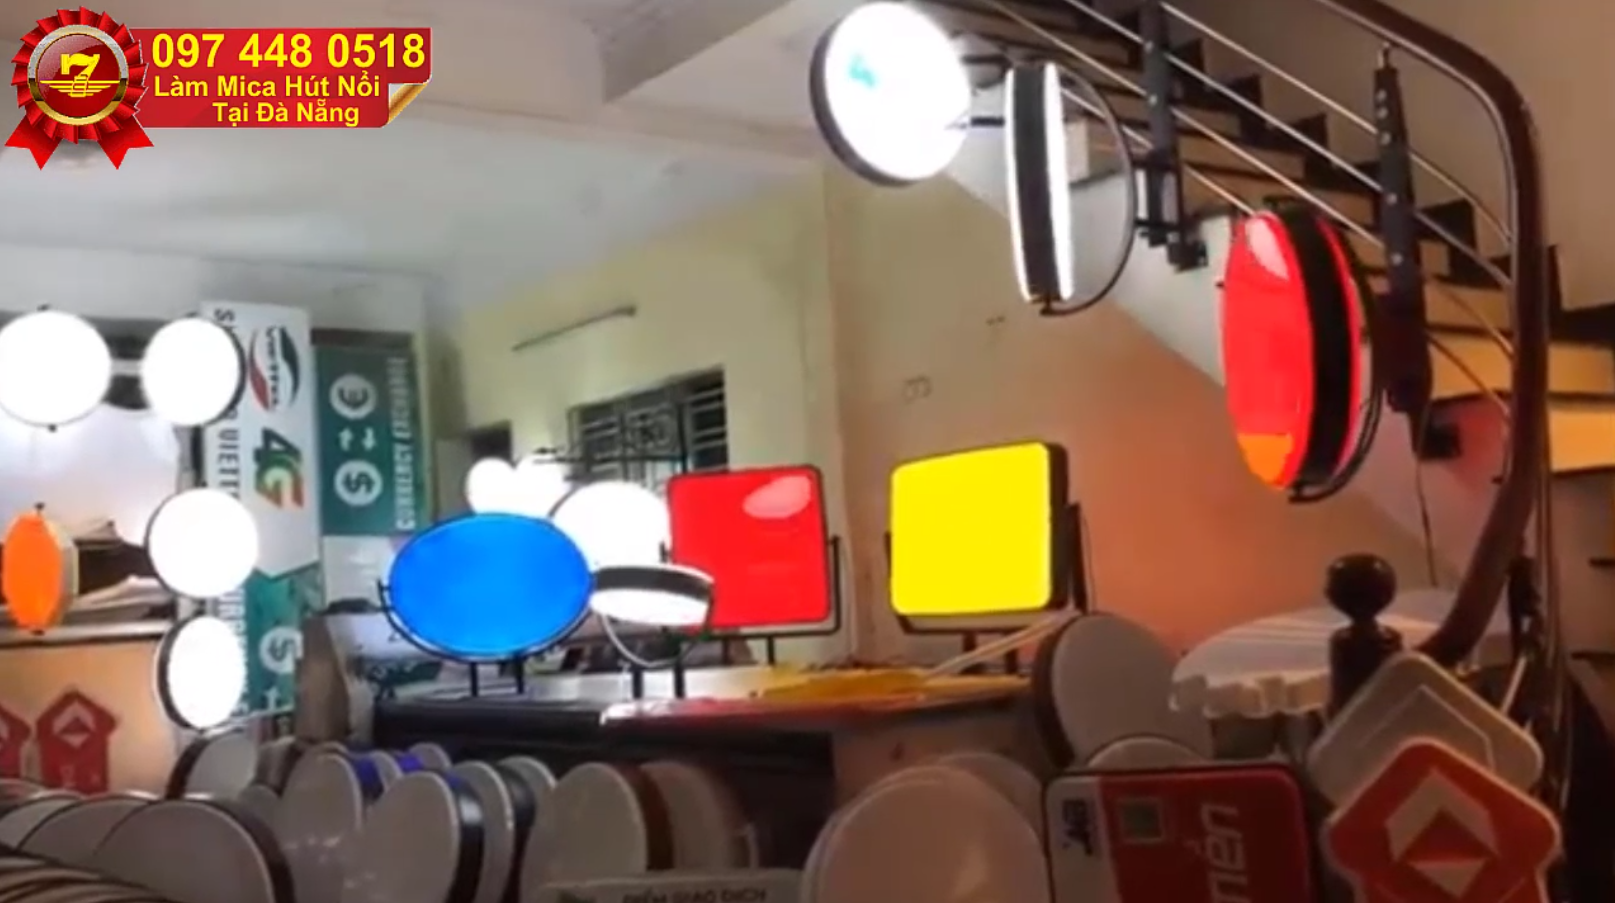 Bán hộp đèn hút nổi có đèn led bên trong giá rẻ nhất tại Đà Nẵng